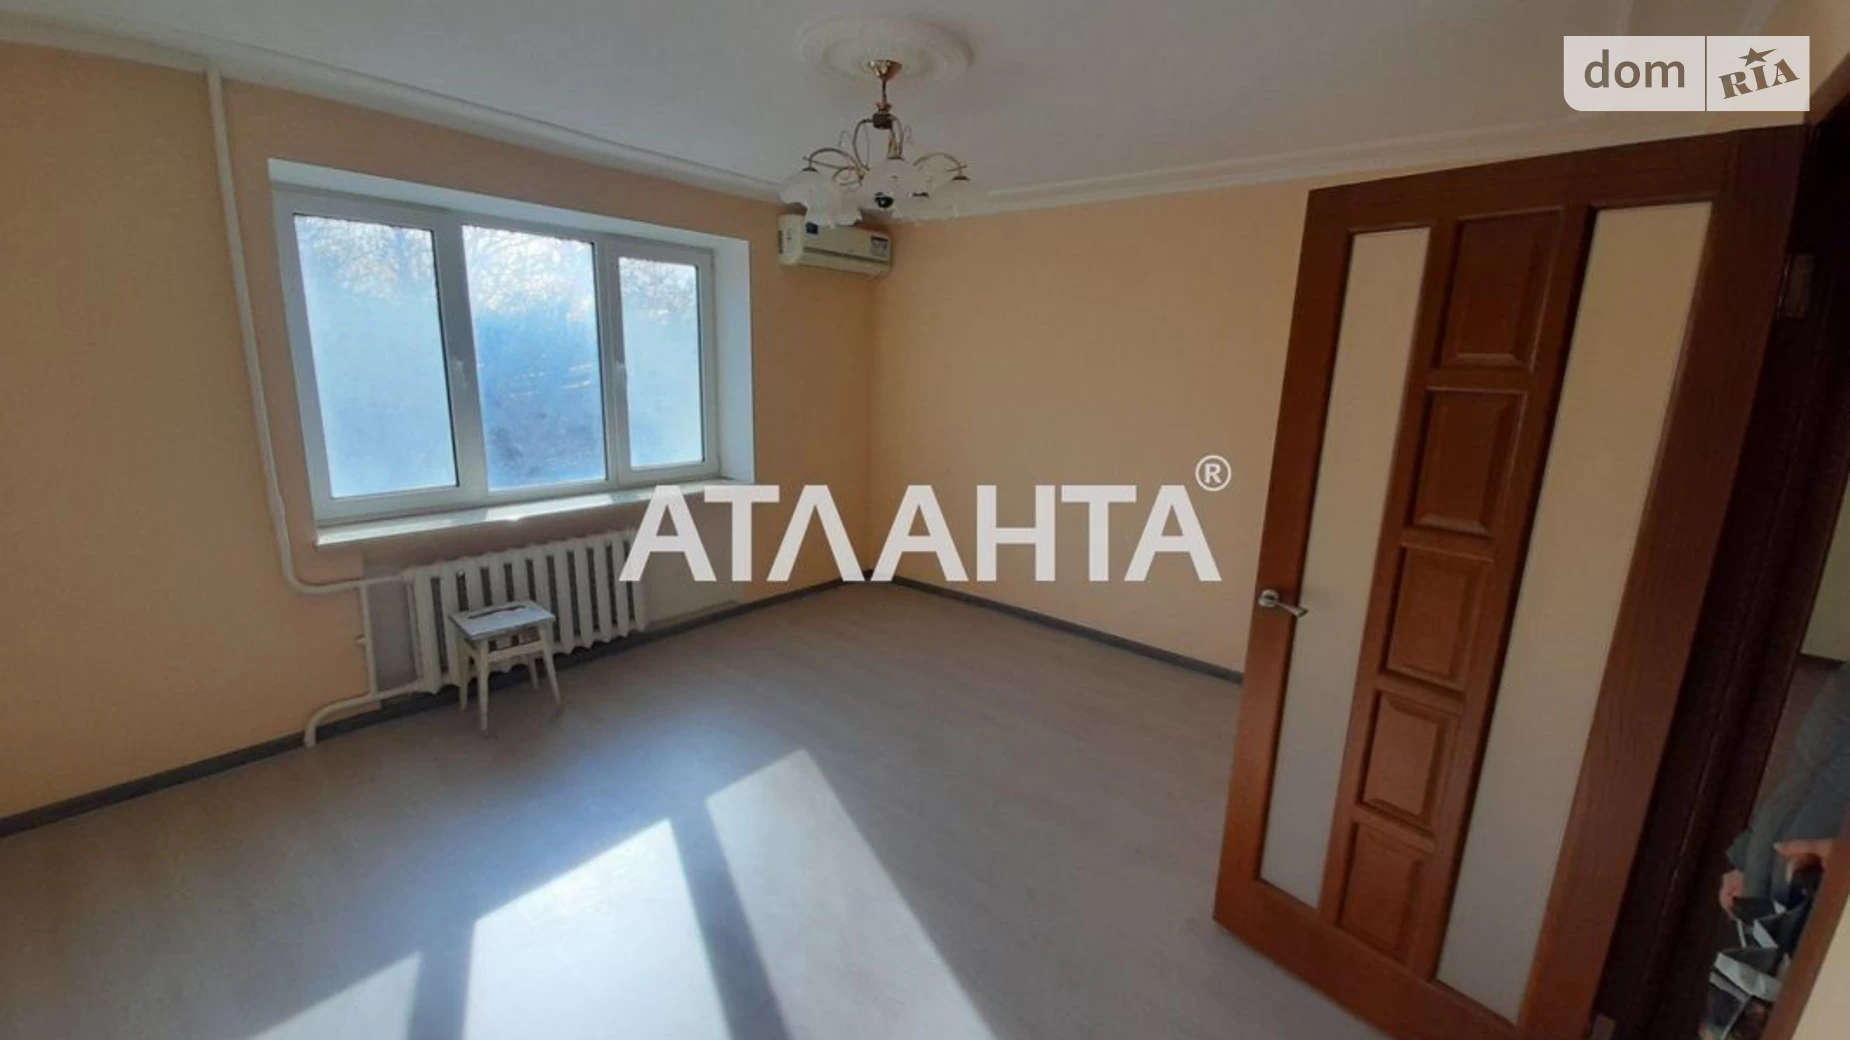 Продається 3-кімнатна квартира 68.8 кв. м у Одесі, вул. Люстдорфська дорога